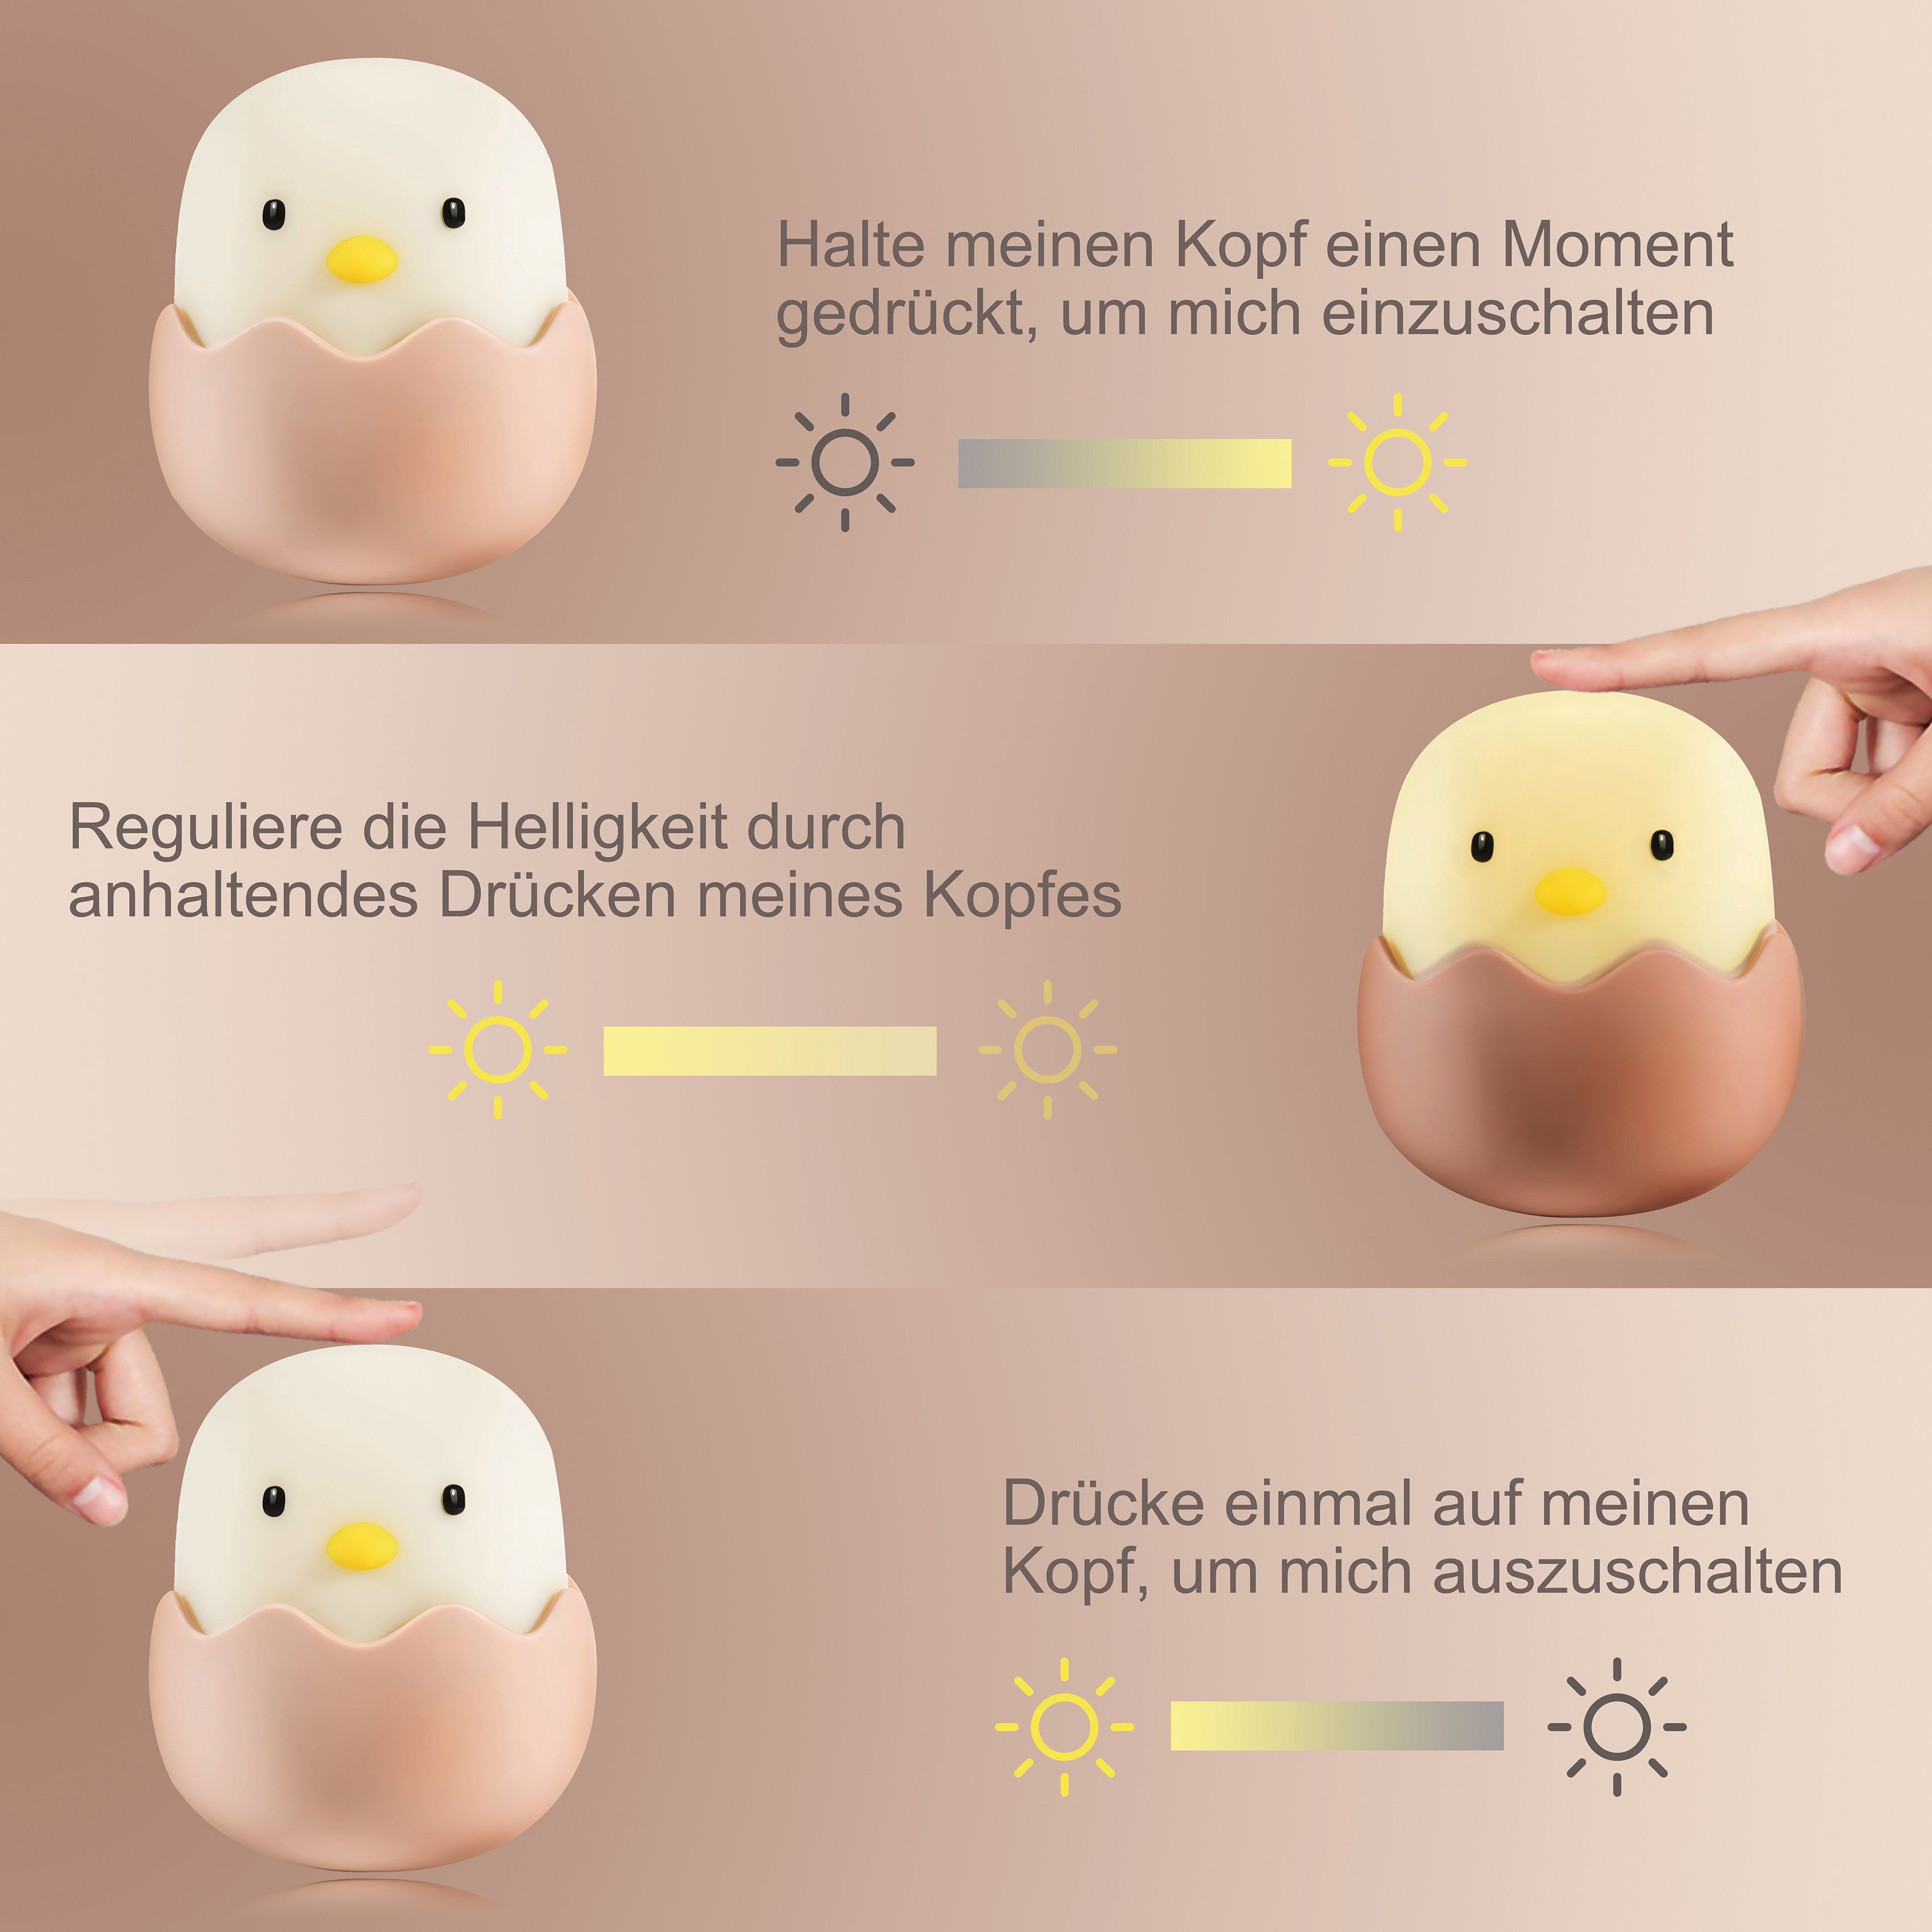 niermann LED Egg fest Eggy integriert, Nachtlicht LED Nachtlicht Eggy Egg